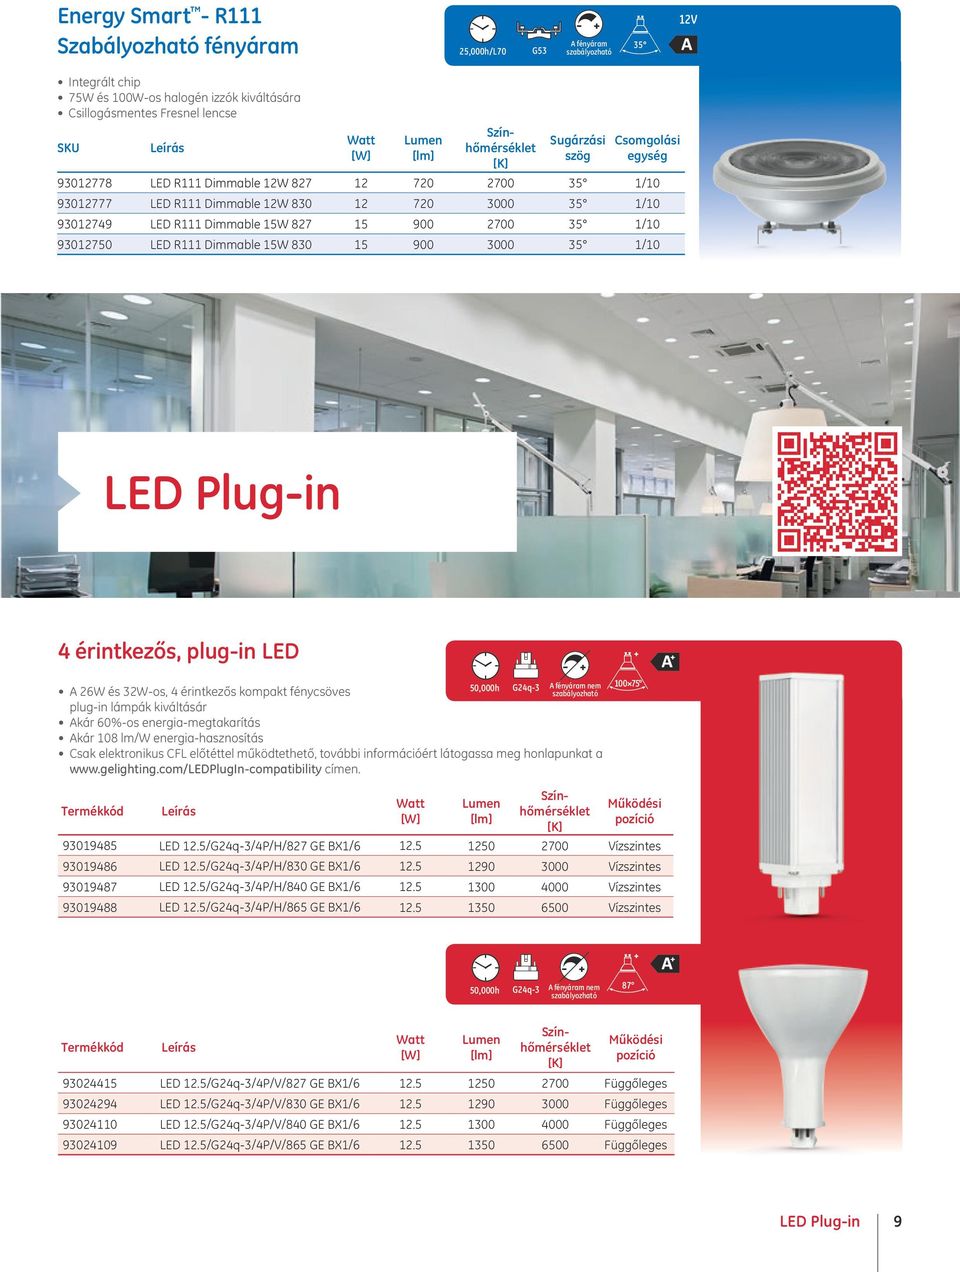 35 1/10 LED Plug-in 4 érintkezős, plug-in LED A 26W és 32W-os, 4 érintkezős kompakt fénycsöves plug-in lámpák kiváltásár Akár 60%-os energia-megtakarítás Akár 108 lm/w energia-hasznosítás 50,000h